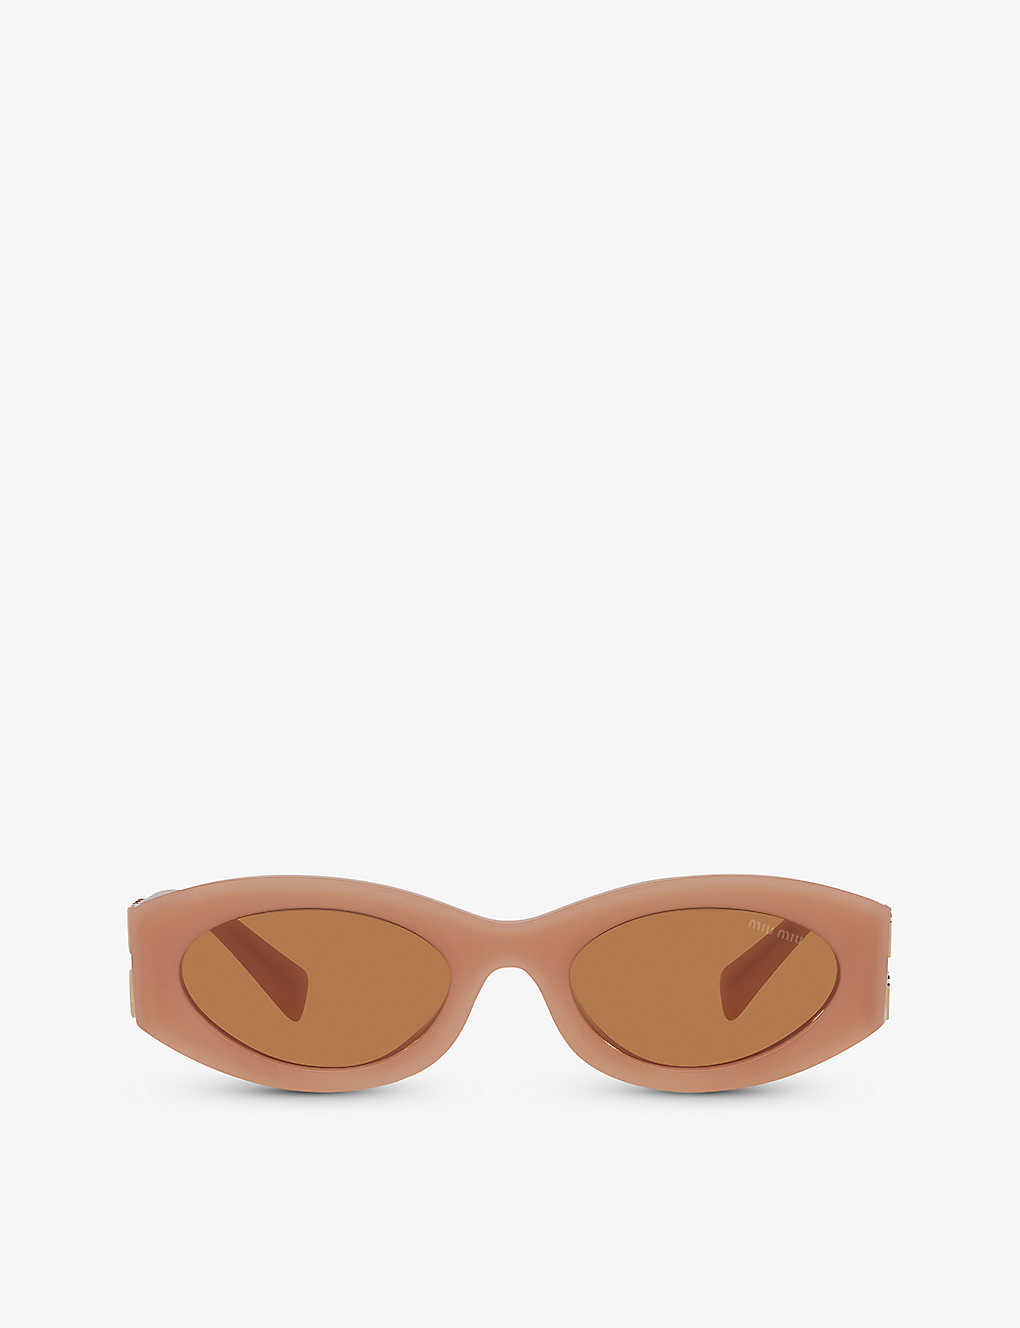 Miu Miu Womens Brown Mu 11ws Oval-frame Acetate Sunglasses